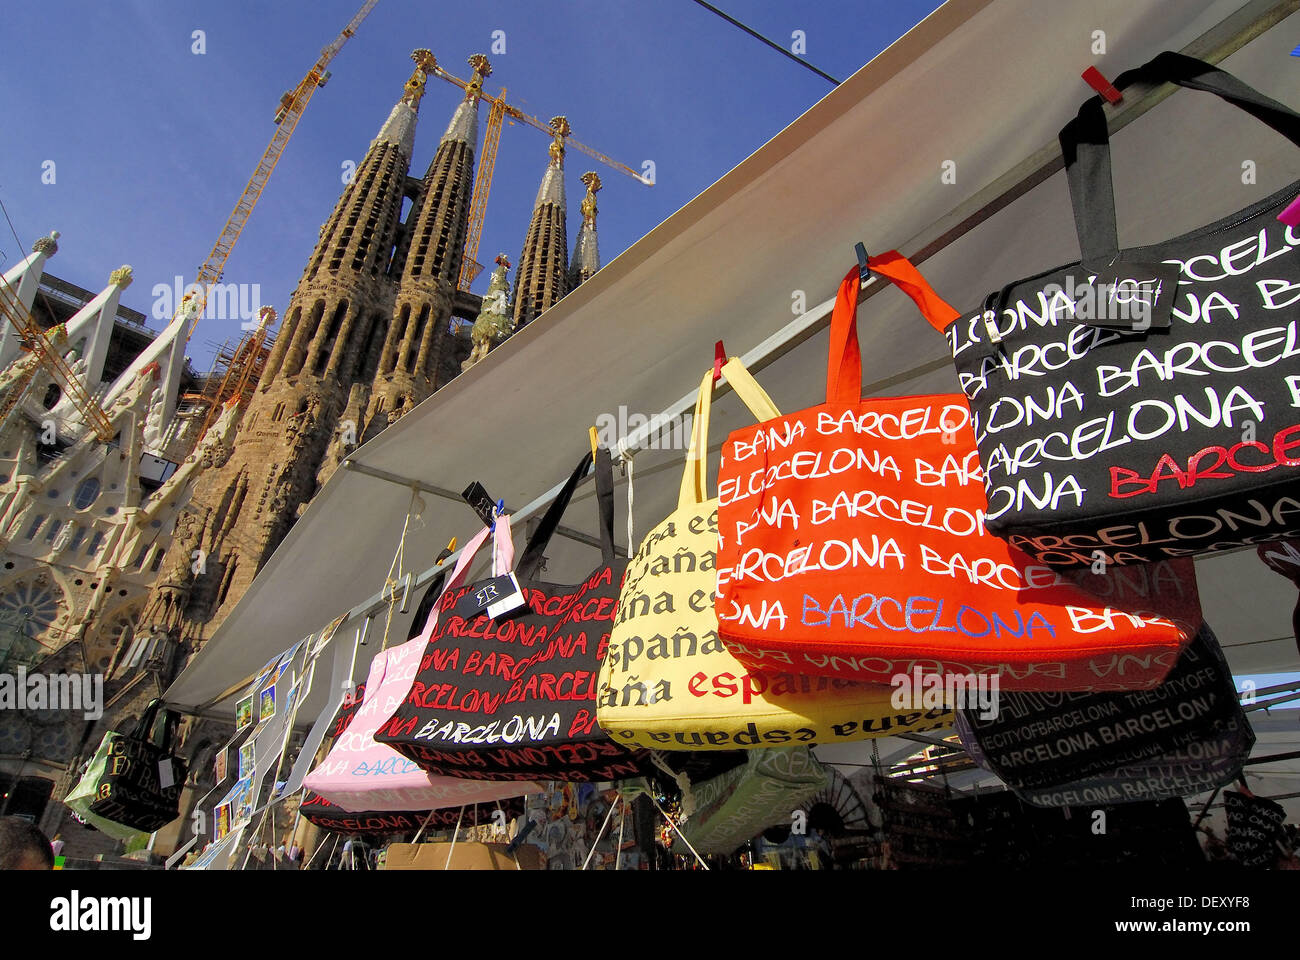 Sacs dans une boutique de souvenirs. Sagrada Familia, par Gaudí. Barcelone.  Espagne Photo Stock - Alamy